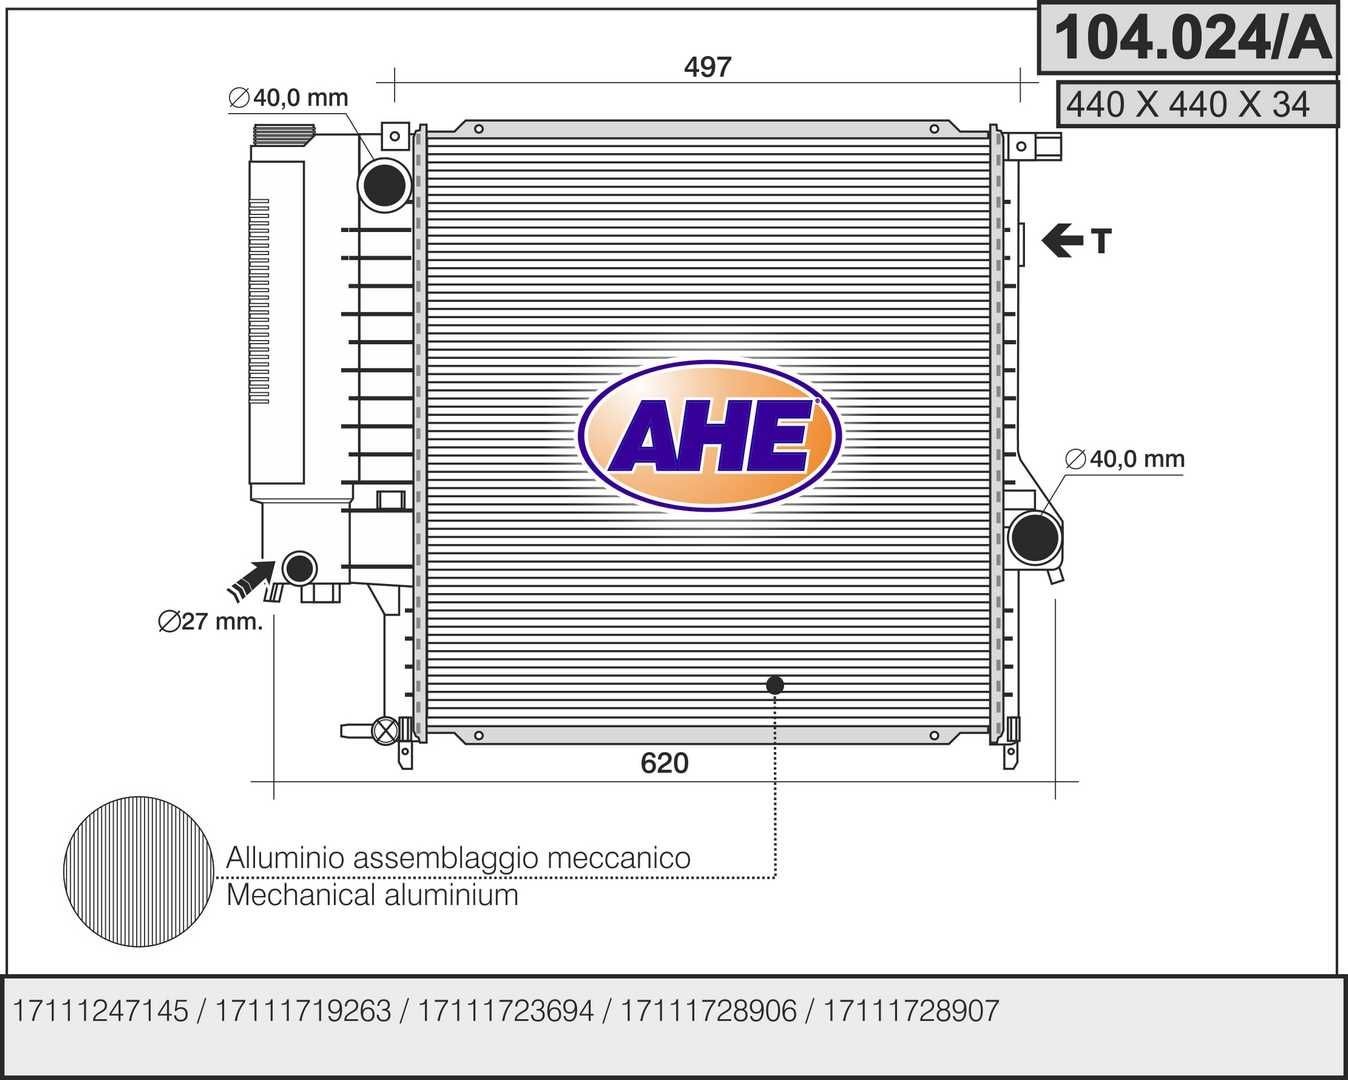 AHE 104.024/A Engine radiator 1711 1 728 905